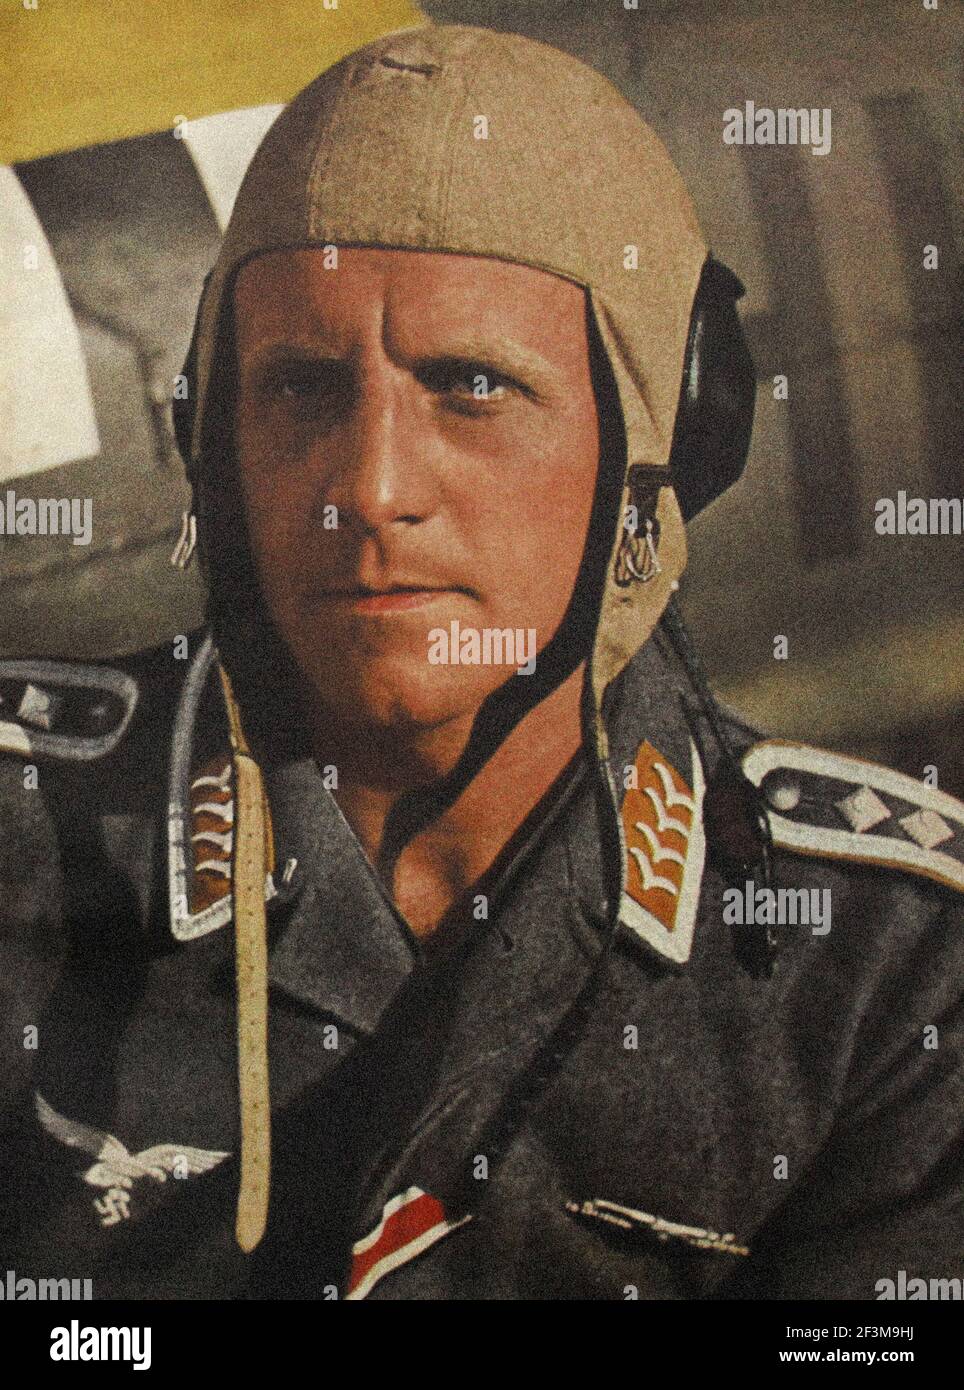 Periodo della seconda guerra mondiale dalle notizie della propaganda tedesca. Luftwaffe pilota tedesco del corpo africano di Rommel. 1942 Foto Stock